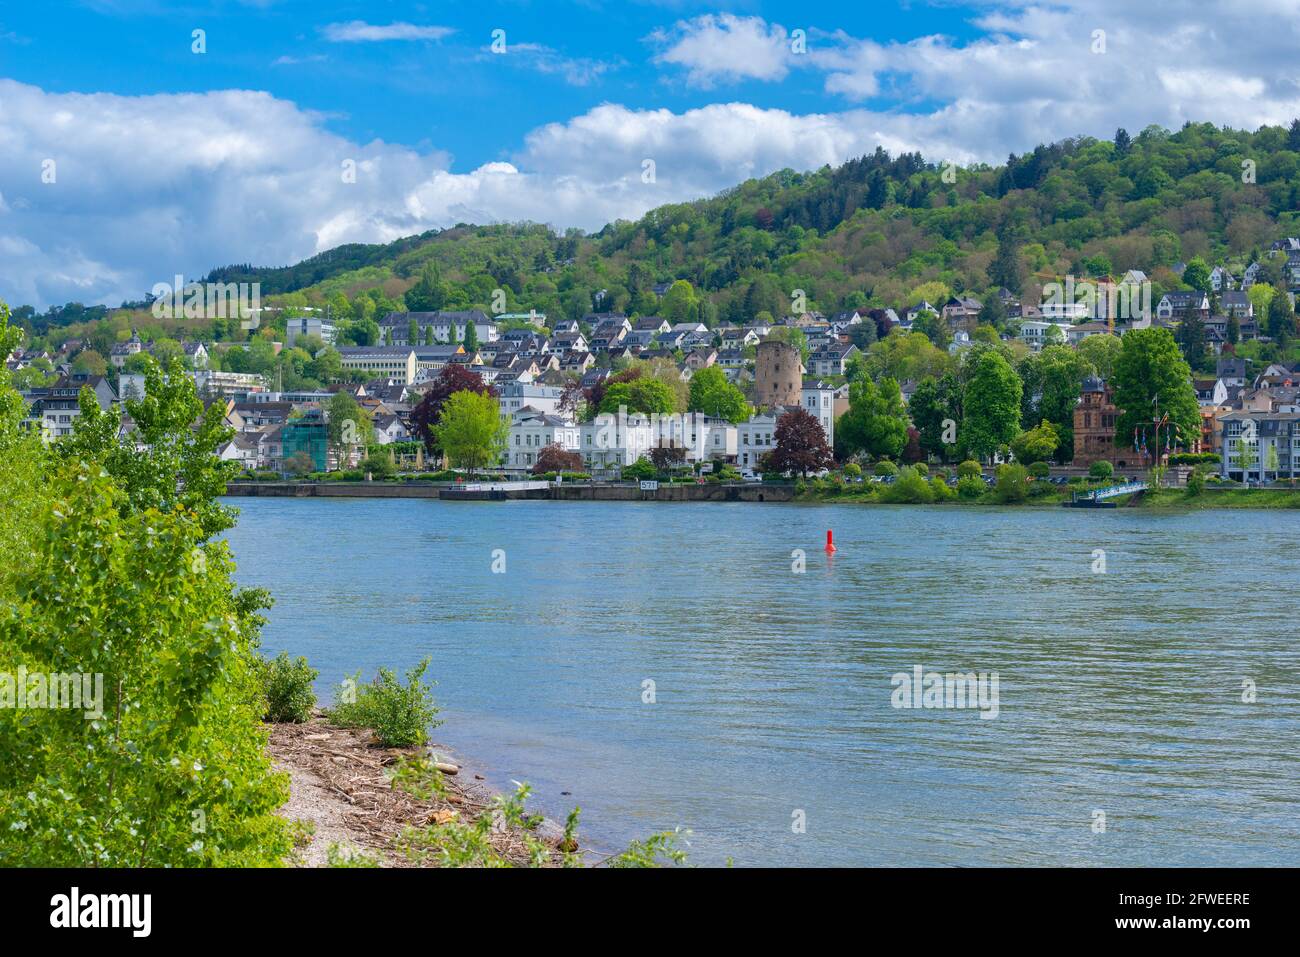 Petite ville de Boppard, vallée du Rhin, patrimoine mondial de l'UNESCO, Rhénanie-Palatinat, Allemagne Banque D'Images